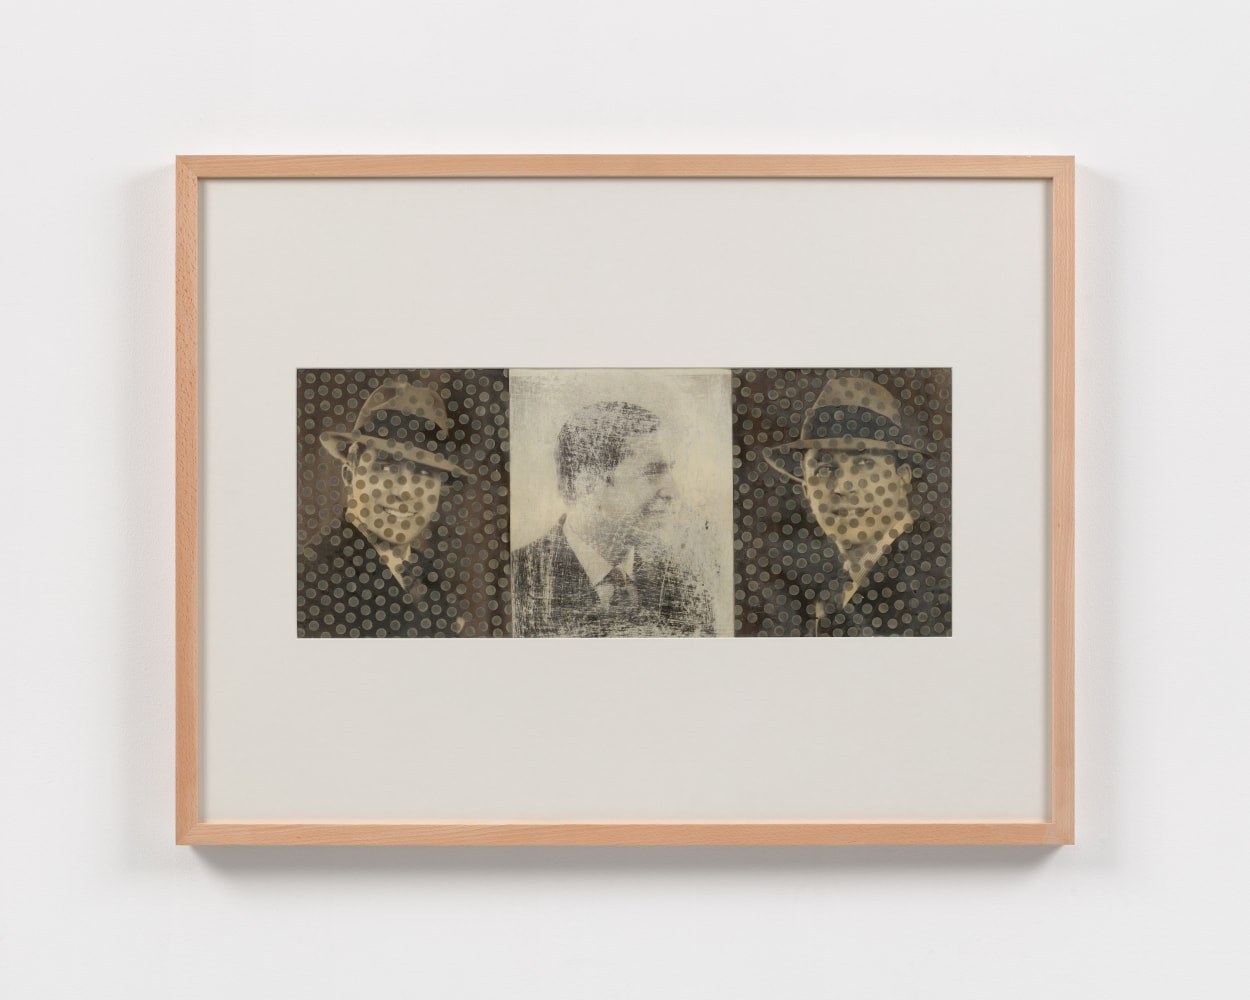 Carlos Gardel, 1991

collage

10 1/4 x 23 3/4 in. / 26 x 60.3 cm